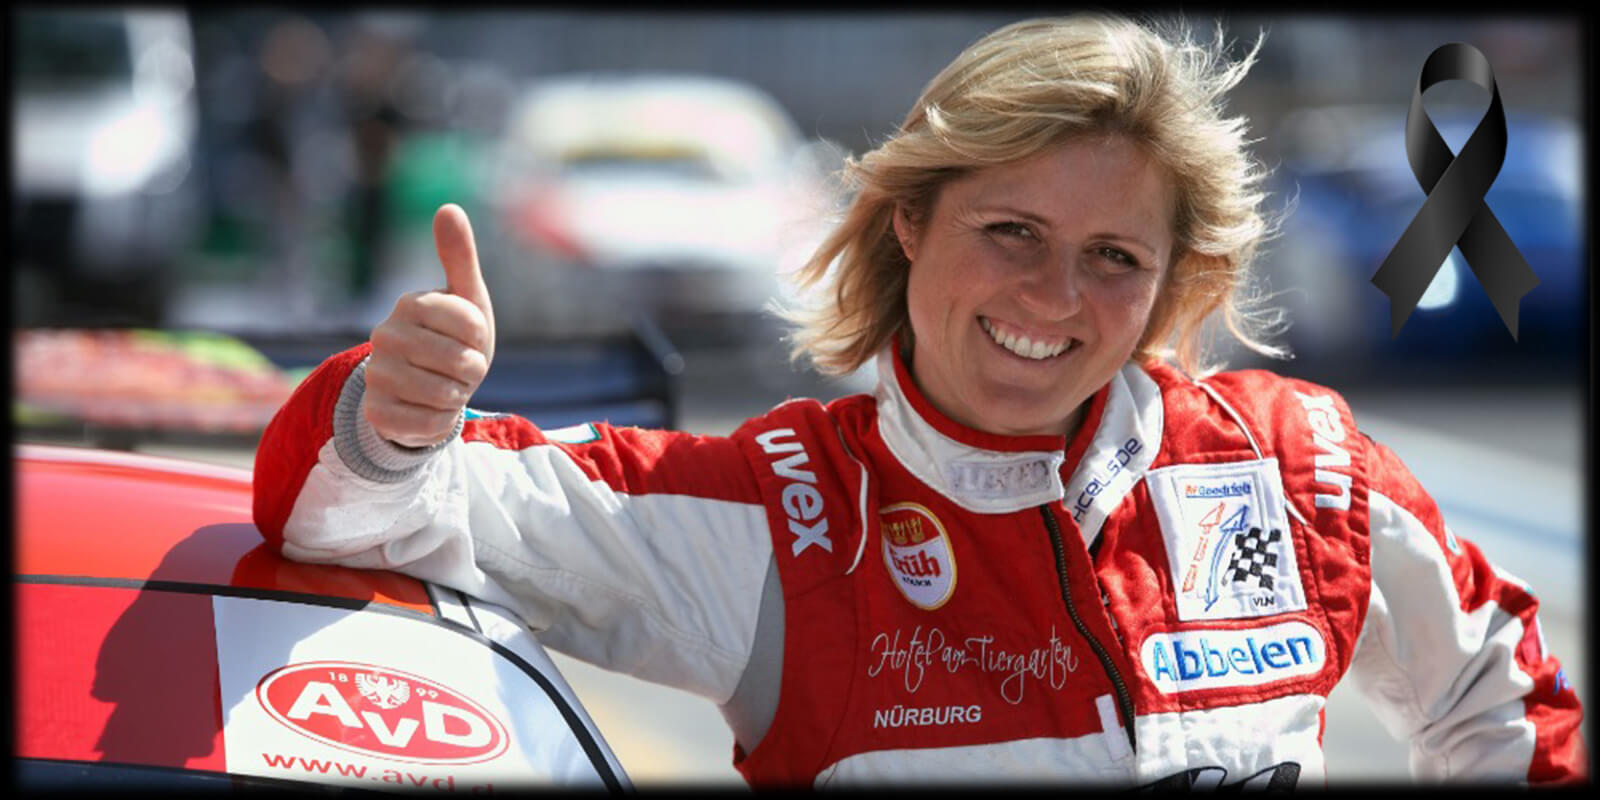 Svet avtomobilizma je za vedno izgubil legendo in kraljico Nurburgringa Sabine Schmitz